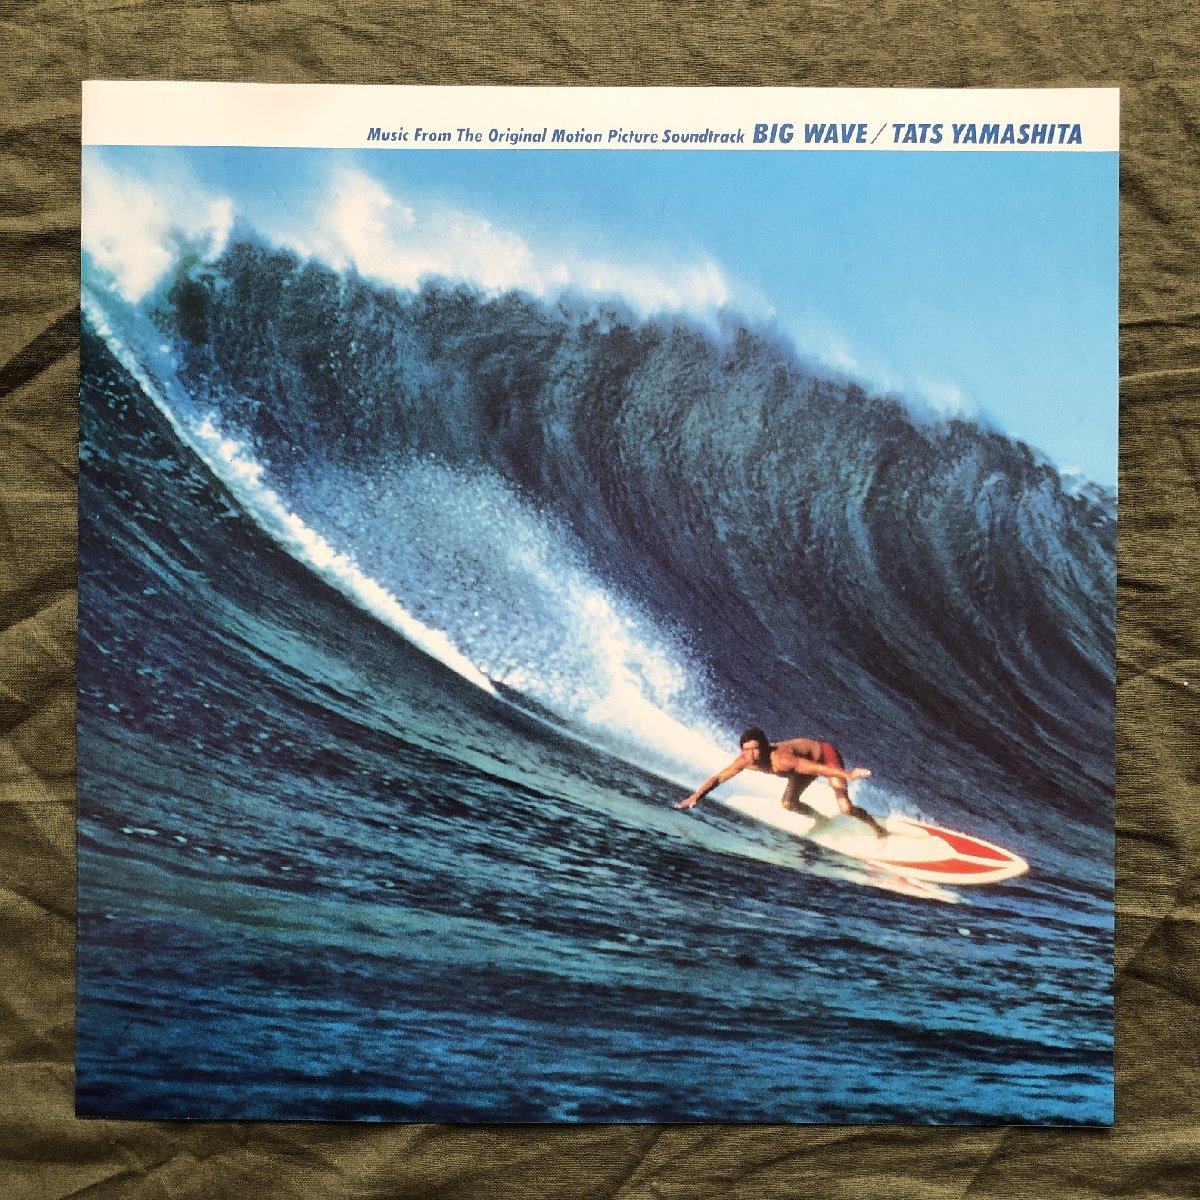 傷なし美盤 1984年オリジナルリリース盤 山下達郎 Tatsuro Yamashita LPレコード ビッグ・ウェイブ Big Wave Original Sound Track_画像6